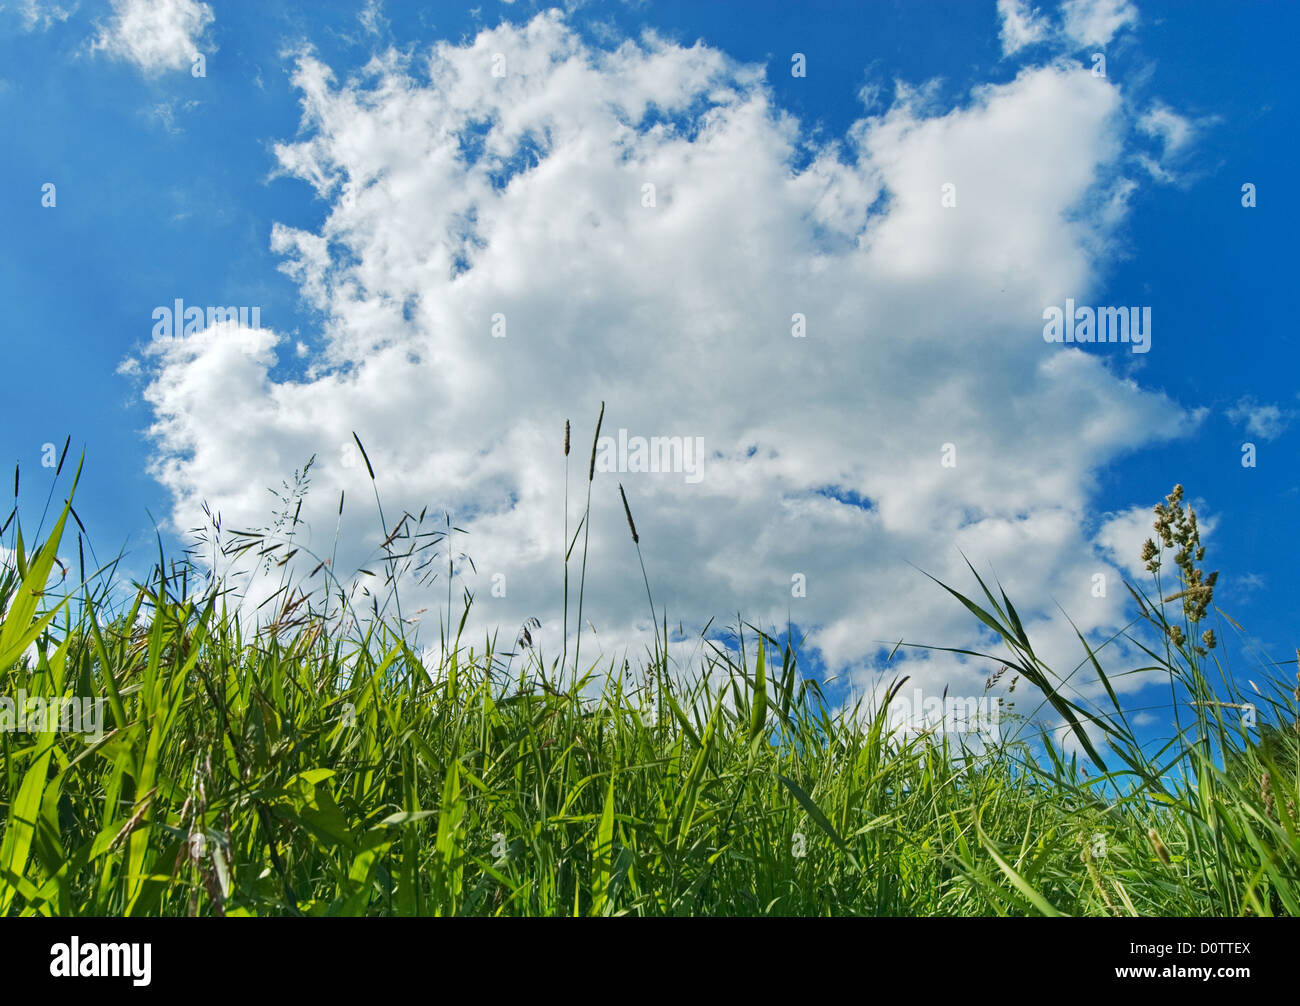 Песня было небо голубое была зеленая. Интерьер травка и голубое небо. И было небо голубое была зеленая трава. Раньше трава была зеленее небо голубее. И трава зеленее и небо голубее стихотворение.